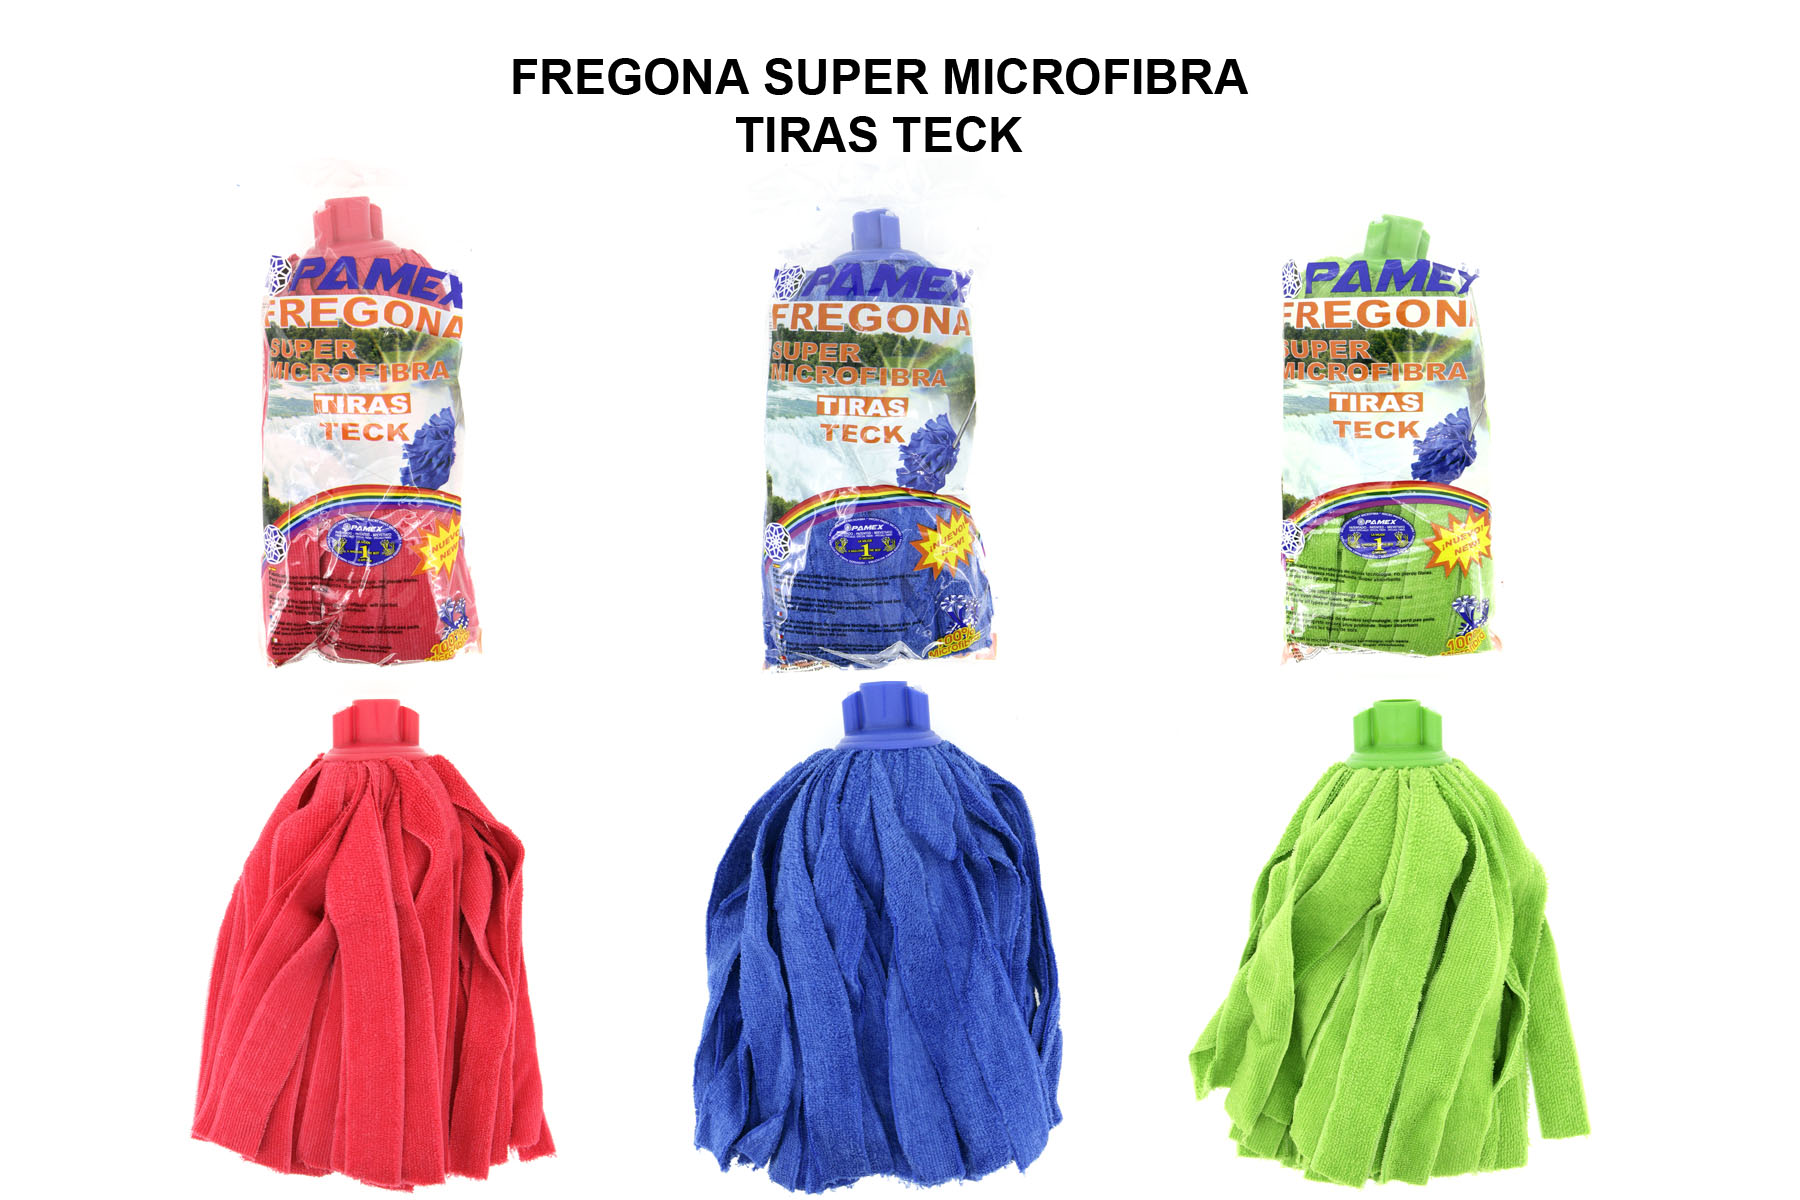 FREGONA SUPER MICROFIBRA TIRAS TECK